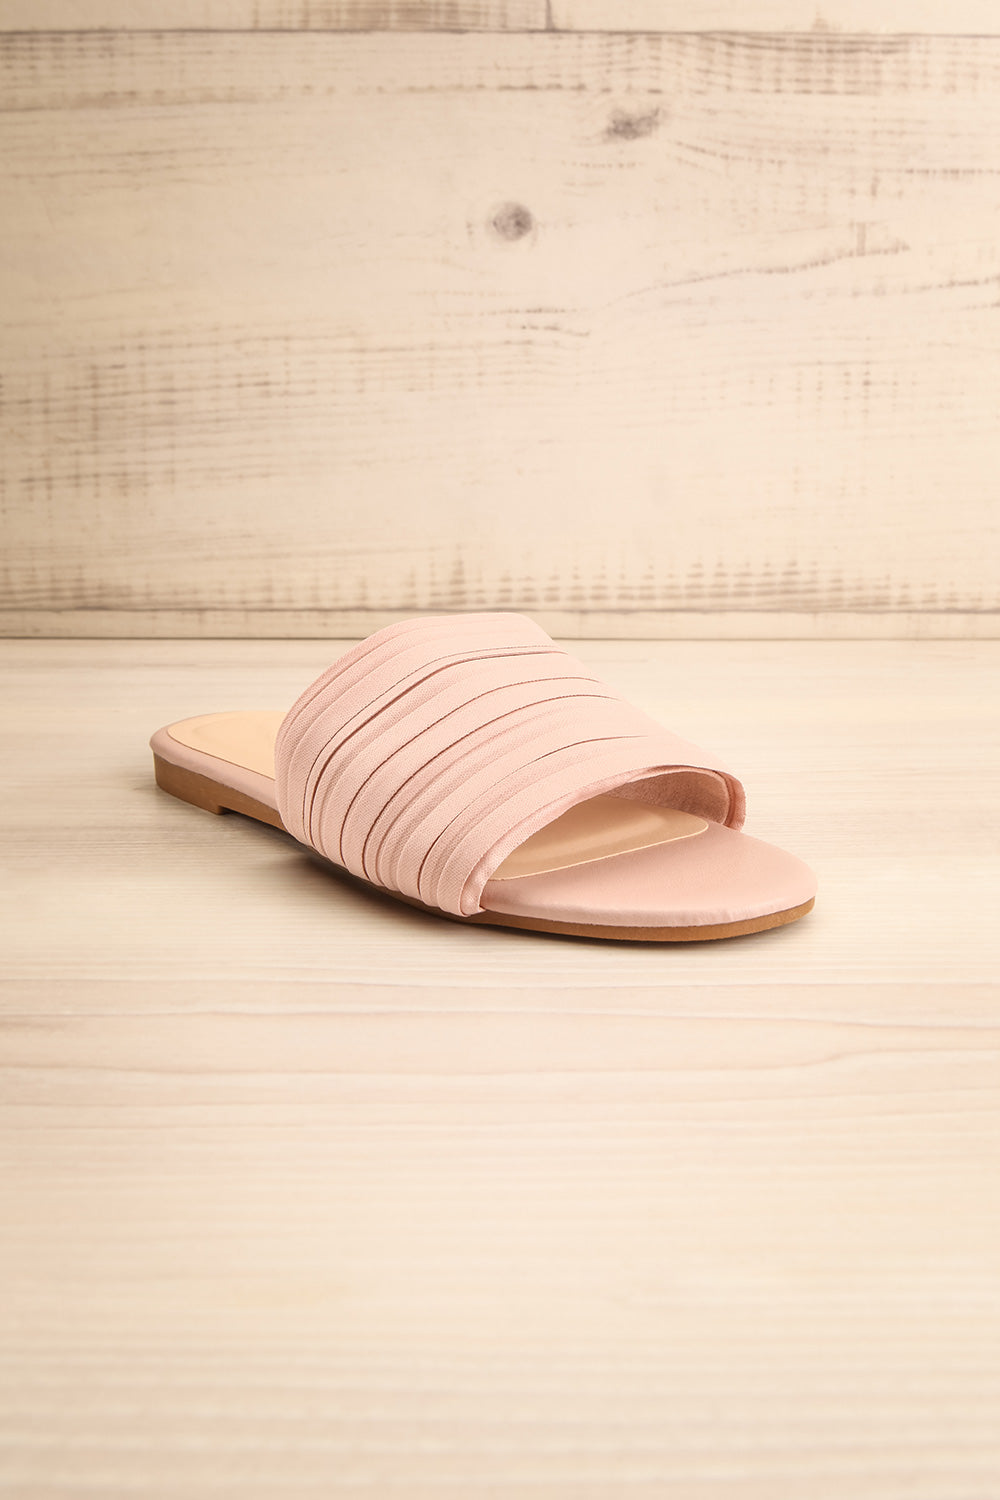 Mox Blush Pleated Slide Sandals | La petite garçonne front view